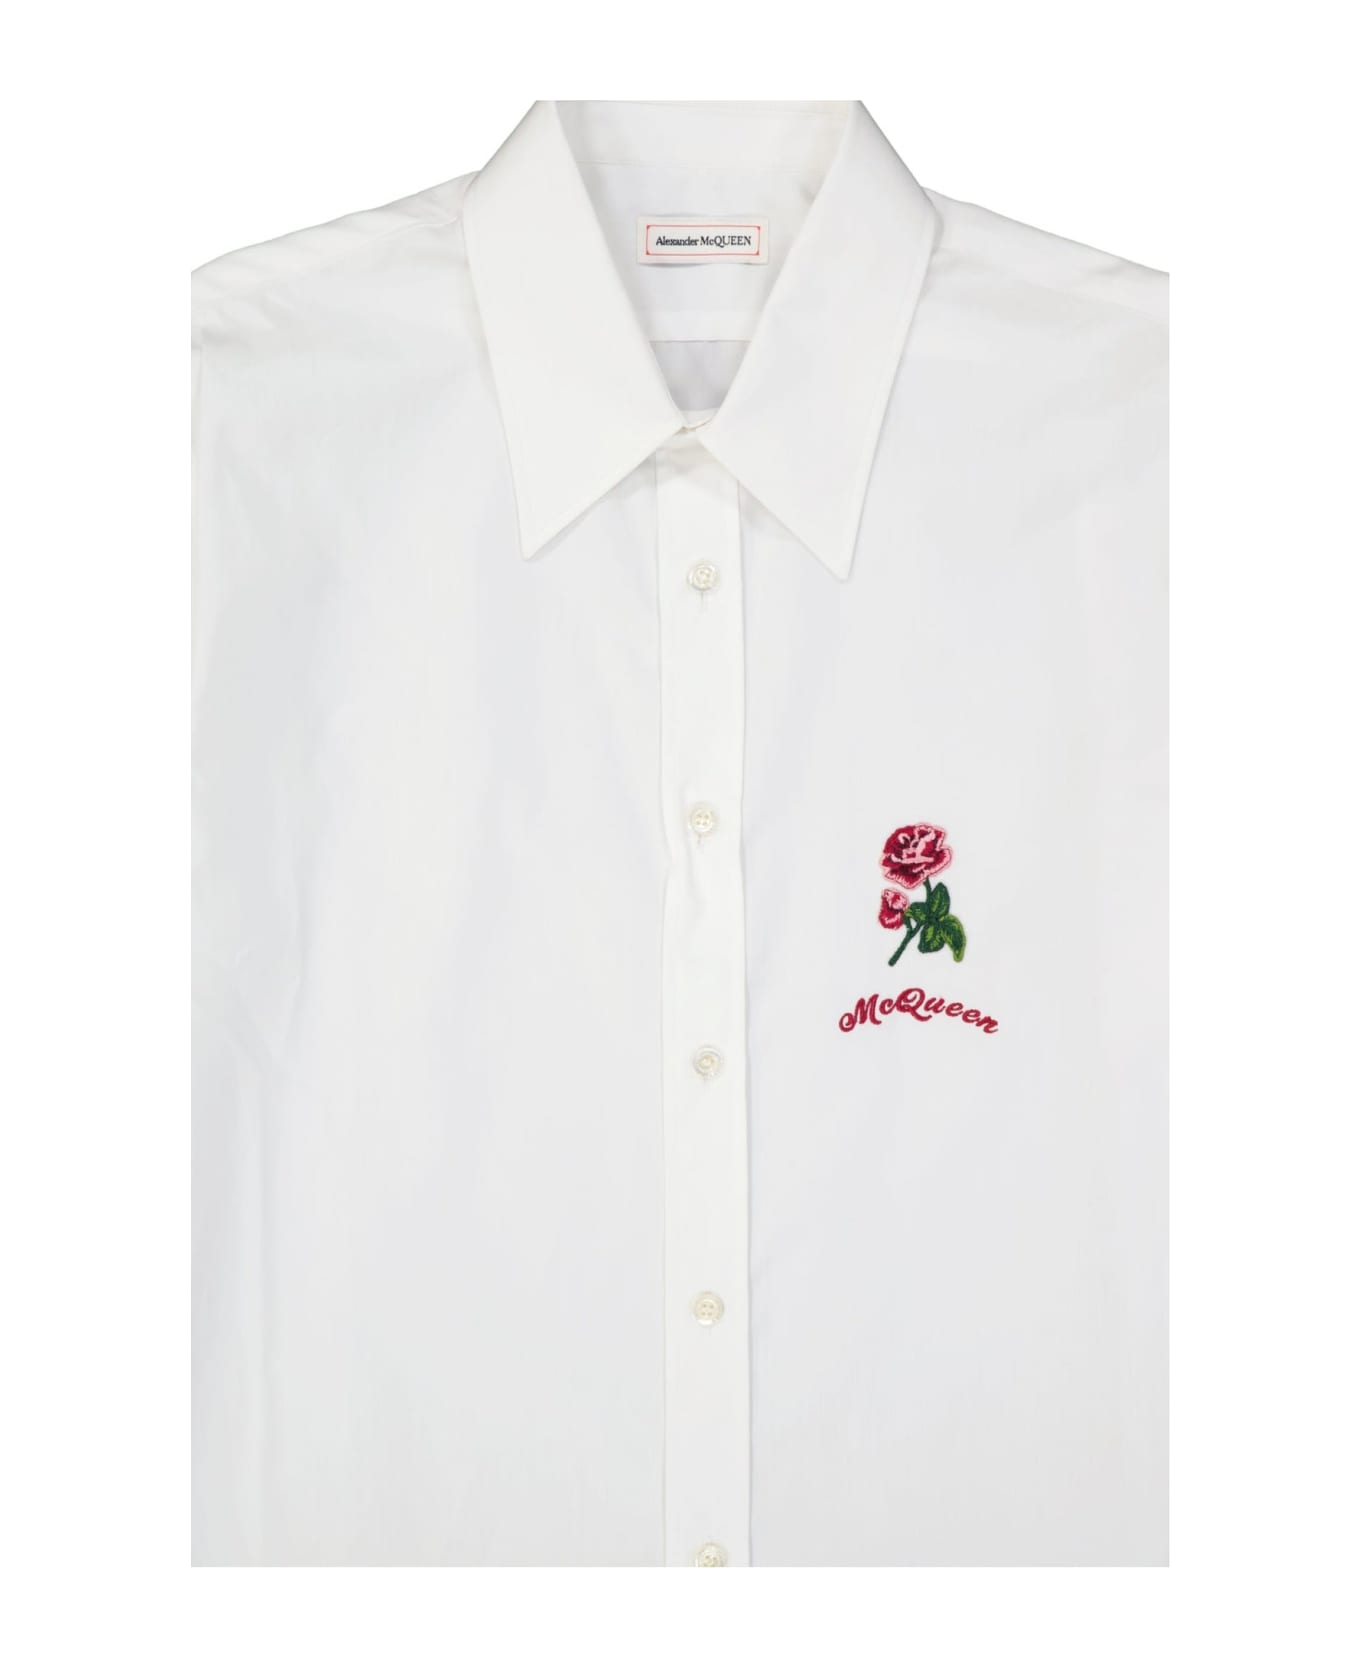 Alexander McQueen Flower Embroidered Cotton Shirt - White シャツ